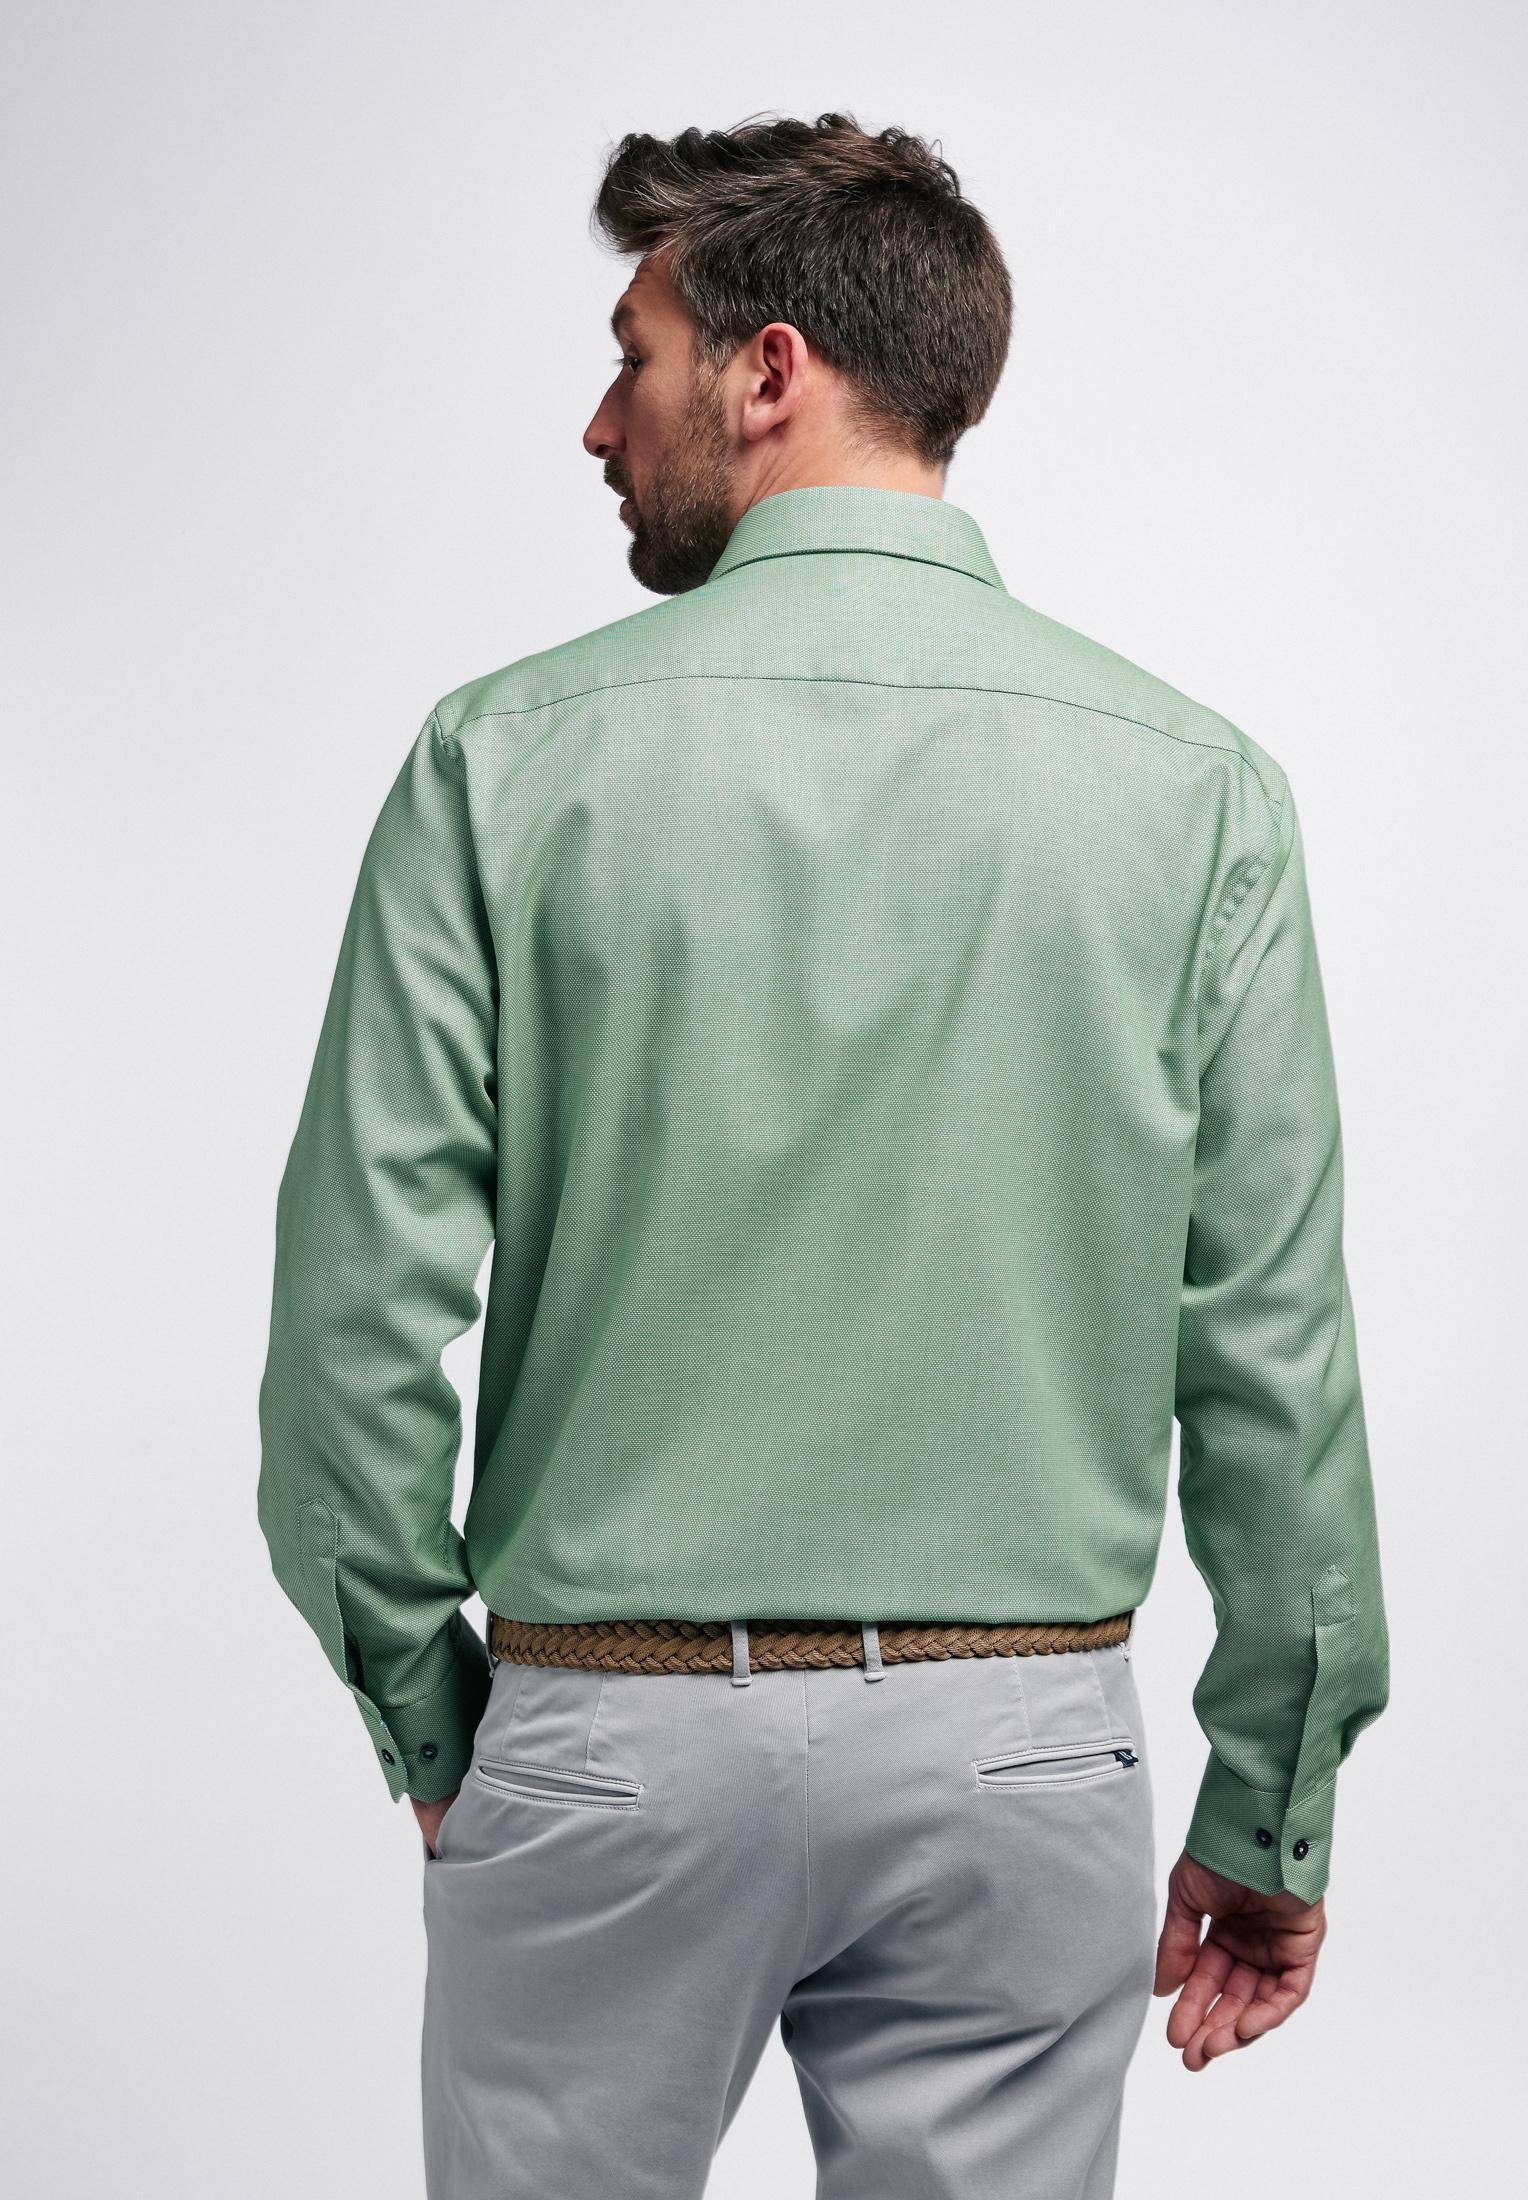 Мужская рубашка ETERNA, зеленая, цвет зеленый, размер 58 - фото 5